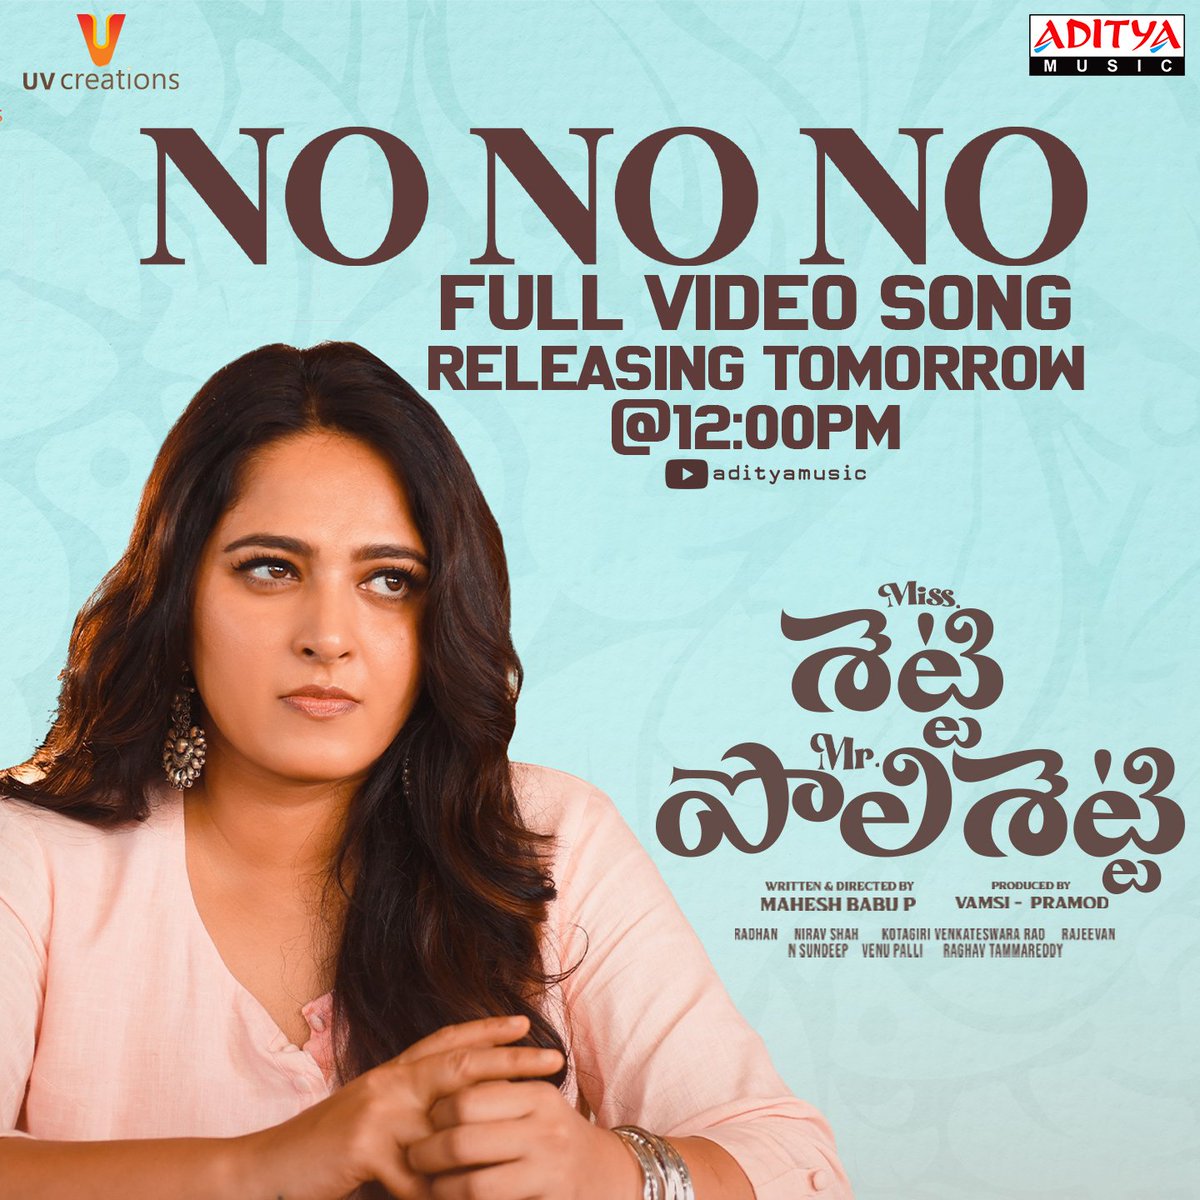 It's time to move and groove! 

The #NoNoNo video song from #MissShettyMrPolishetty will be released tomorrow at 12 PM 😍❤️‍🔥

Stay tuned to @adityamusic

@MsAnushkaShetty @NaveenPolishety @filmymahesh @radhanmusic #NiravShah #RajeevanNambiar #KotagiriVenkateswararao @manasimm